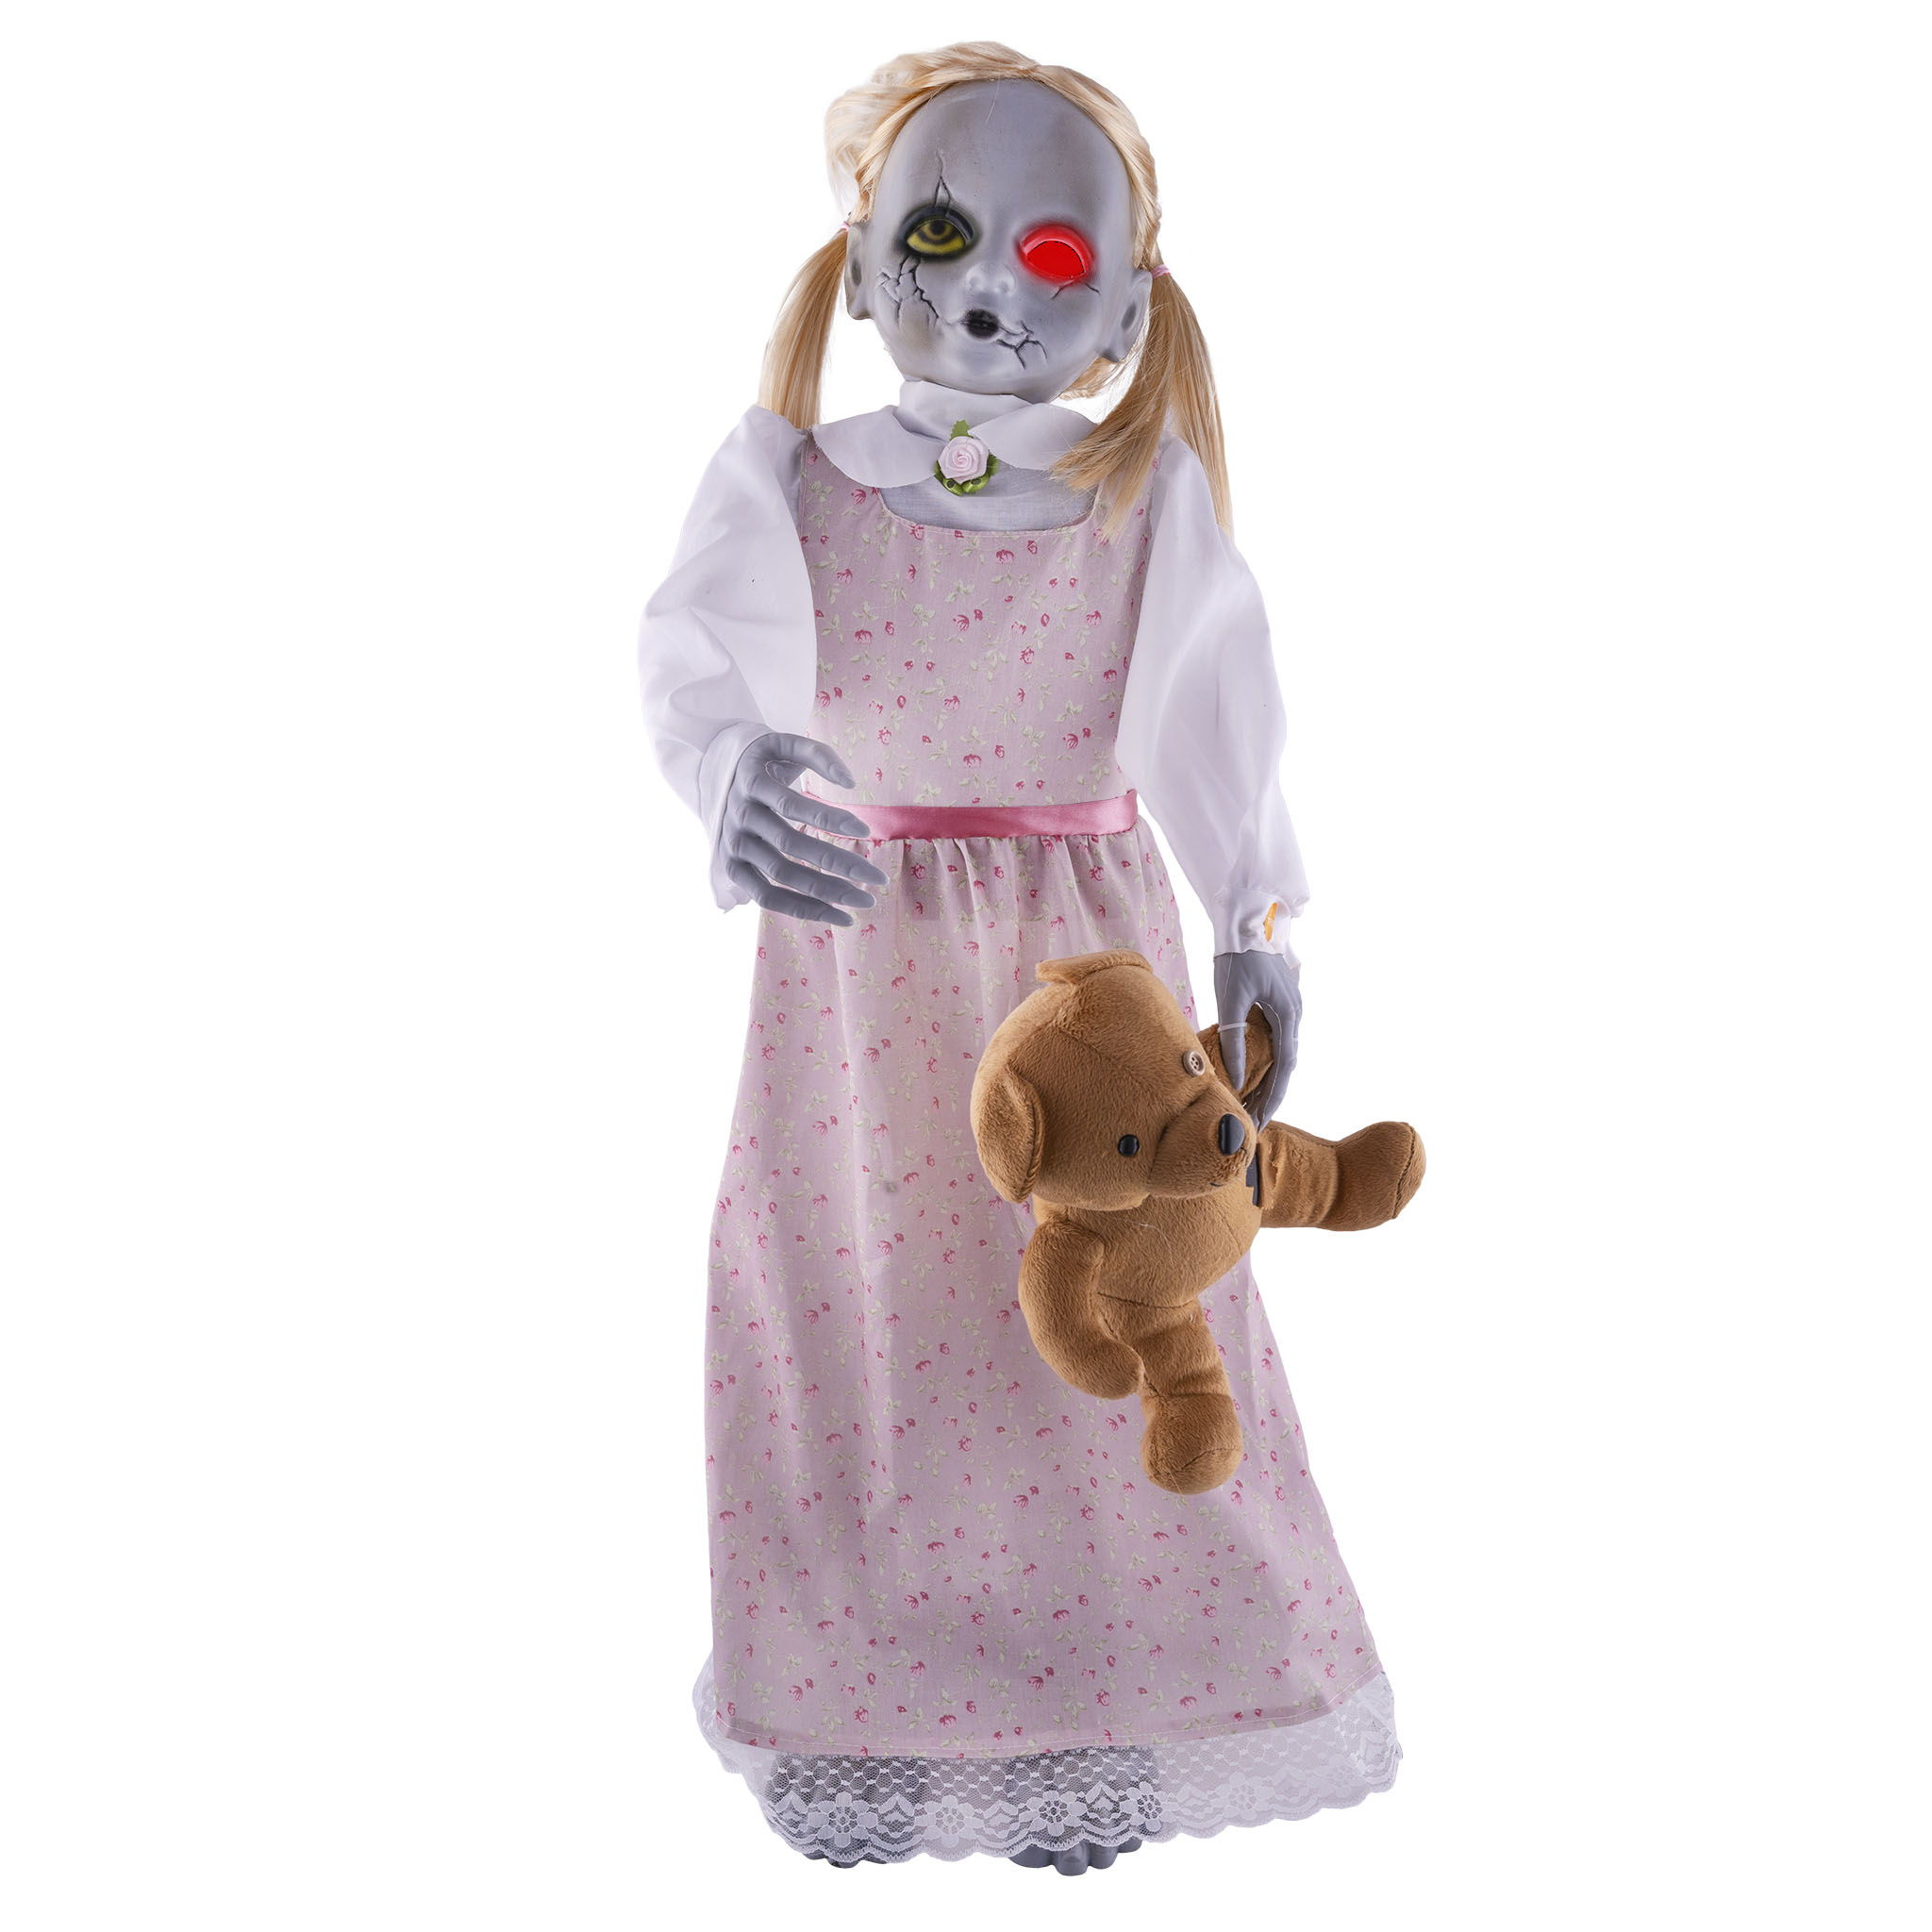 Mädchen mit Teddybär  Größe: 35 x 40 x 95 cm, Bewegung, Licht, Sound